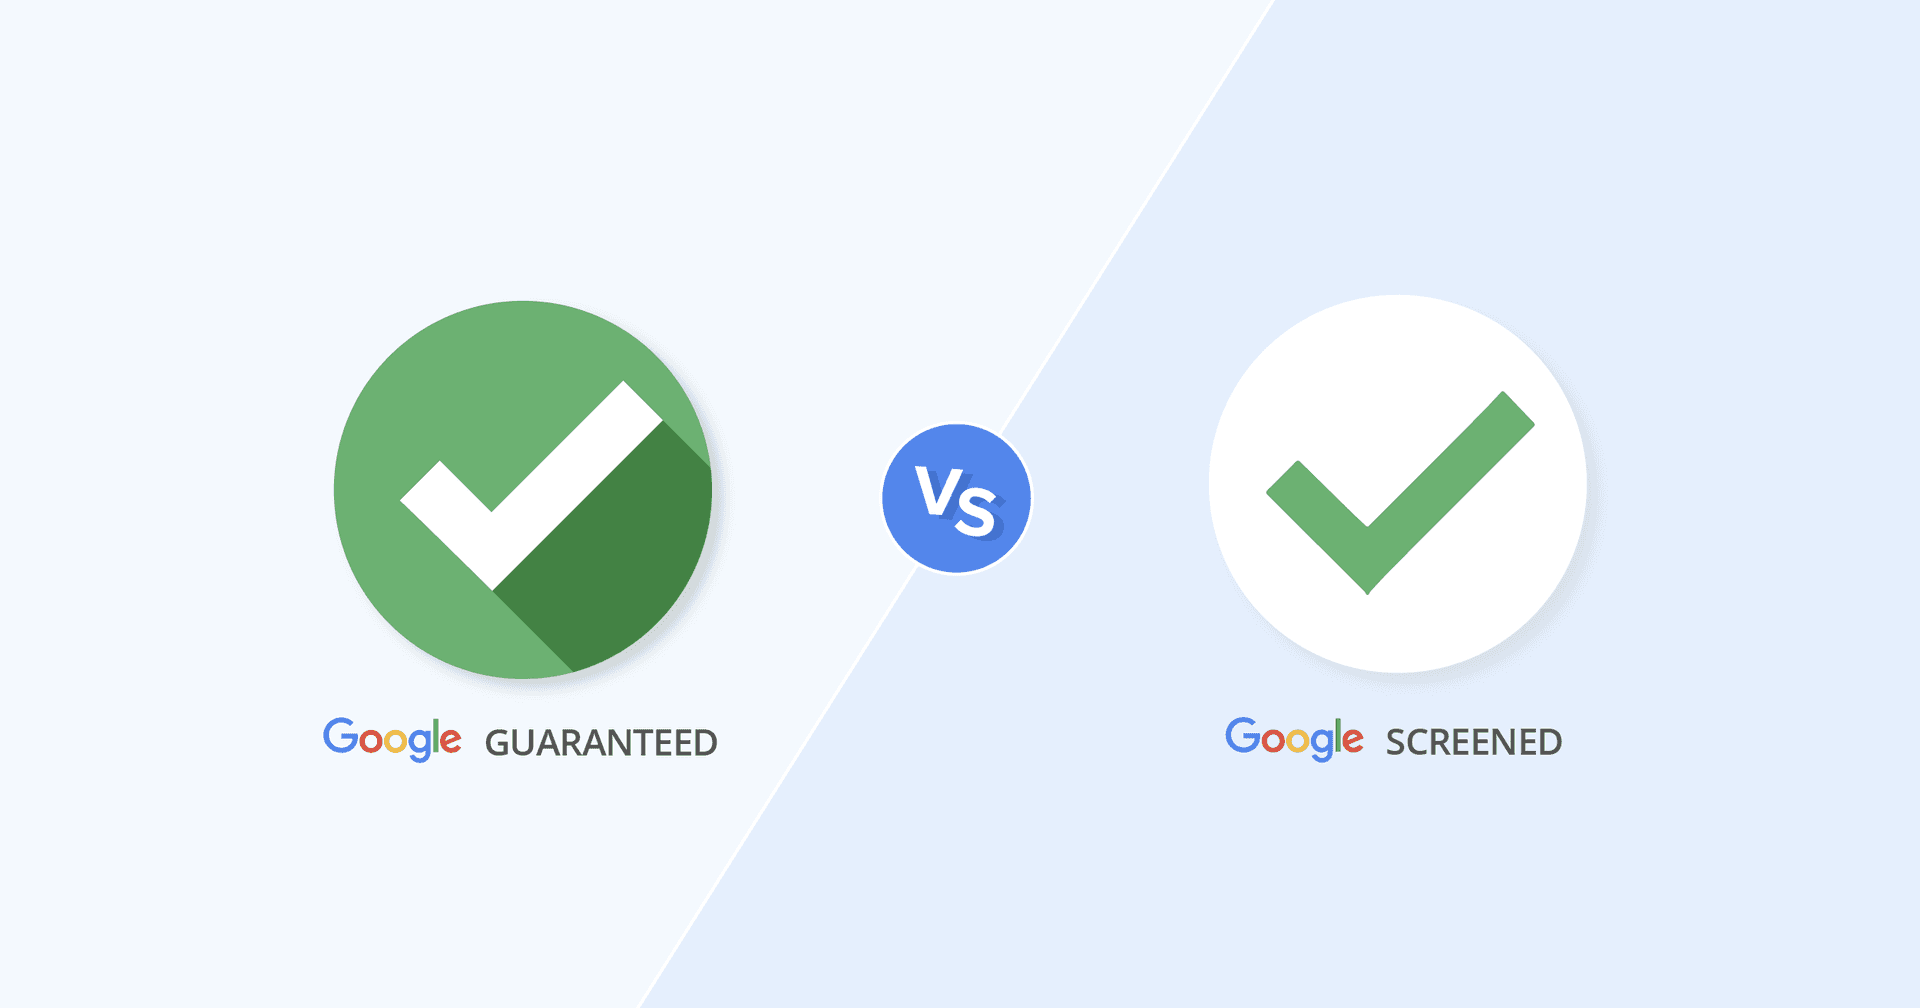 Google Guaranteed vs Google Screened